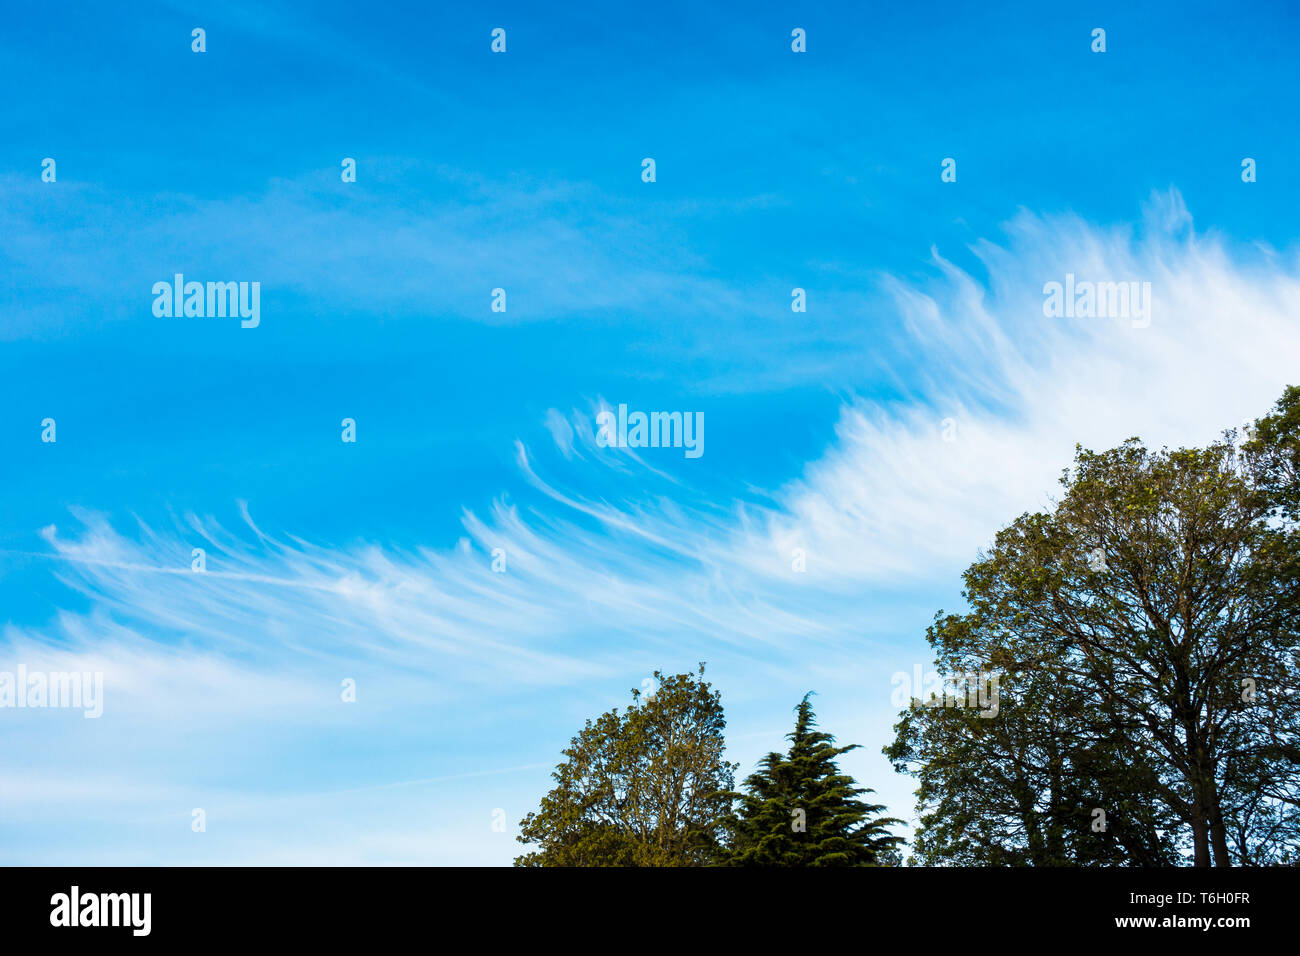 Ungewöhnliche, merkwürdige Wolkenbildung über einen blauen Himmel mit Chemtrails, Kondensstreifen und Bäumen. Stockfoto